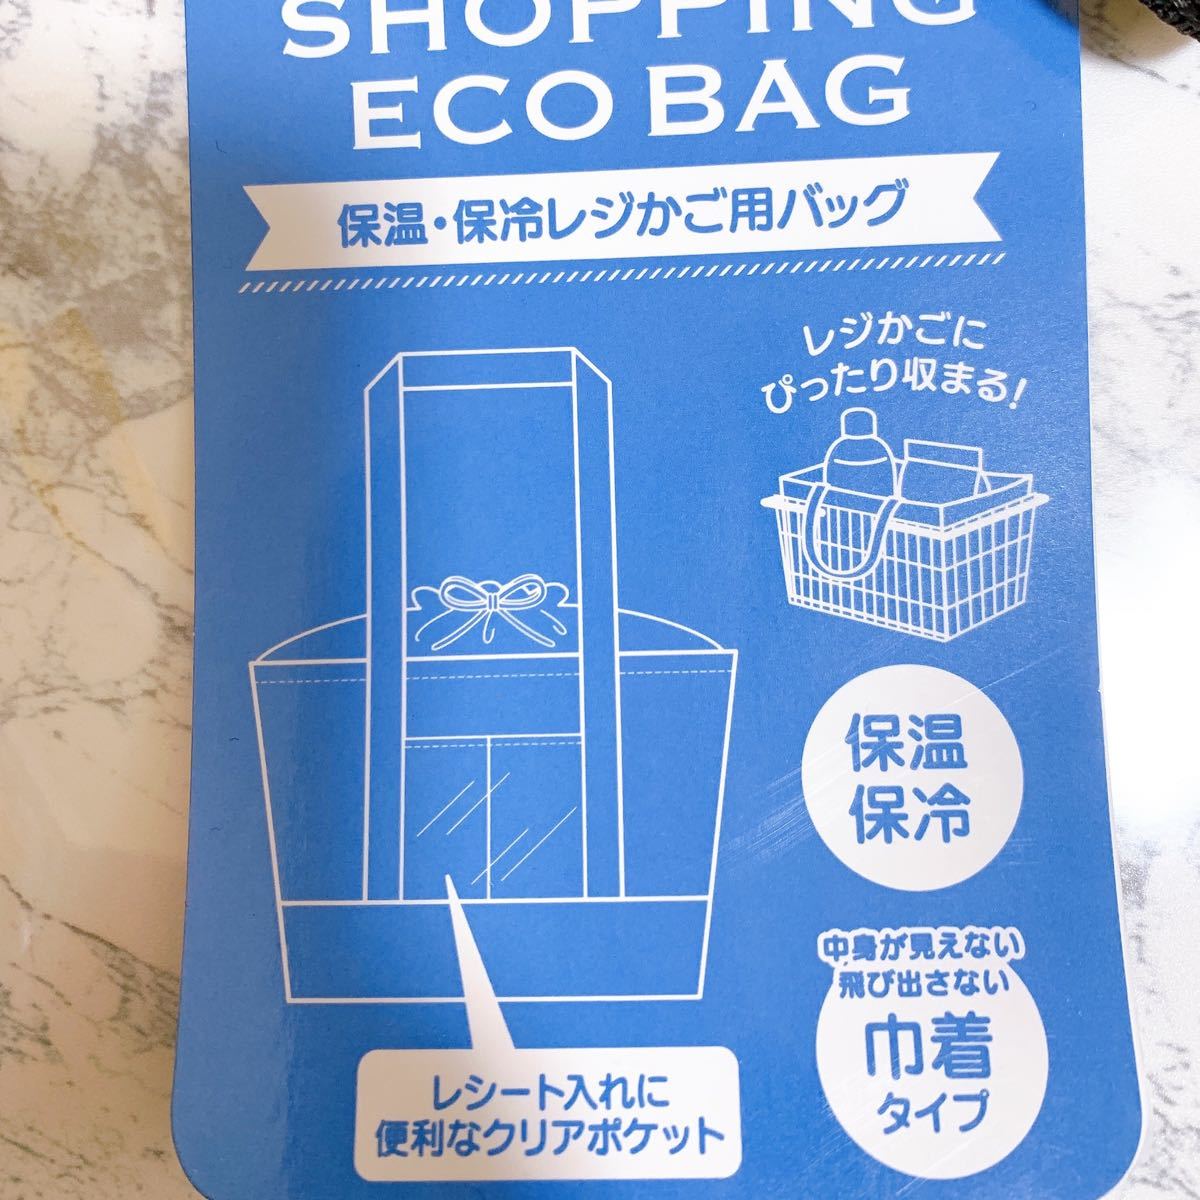 【お値下げ中】プーさん エコバッグ 保温・保冷レジカゴ用バッグ